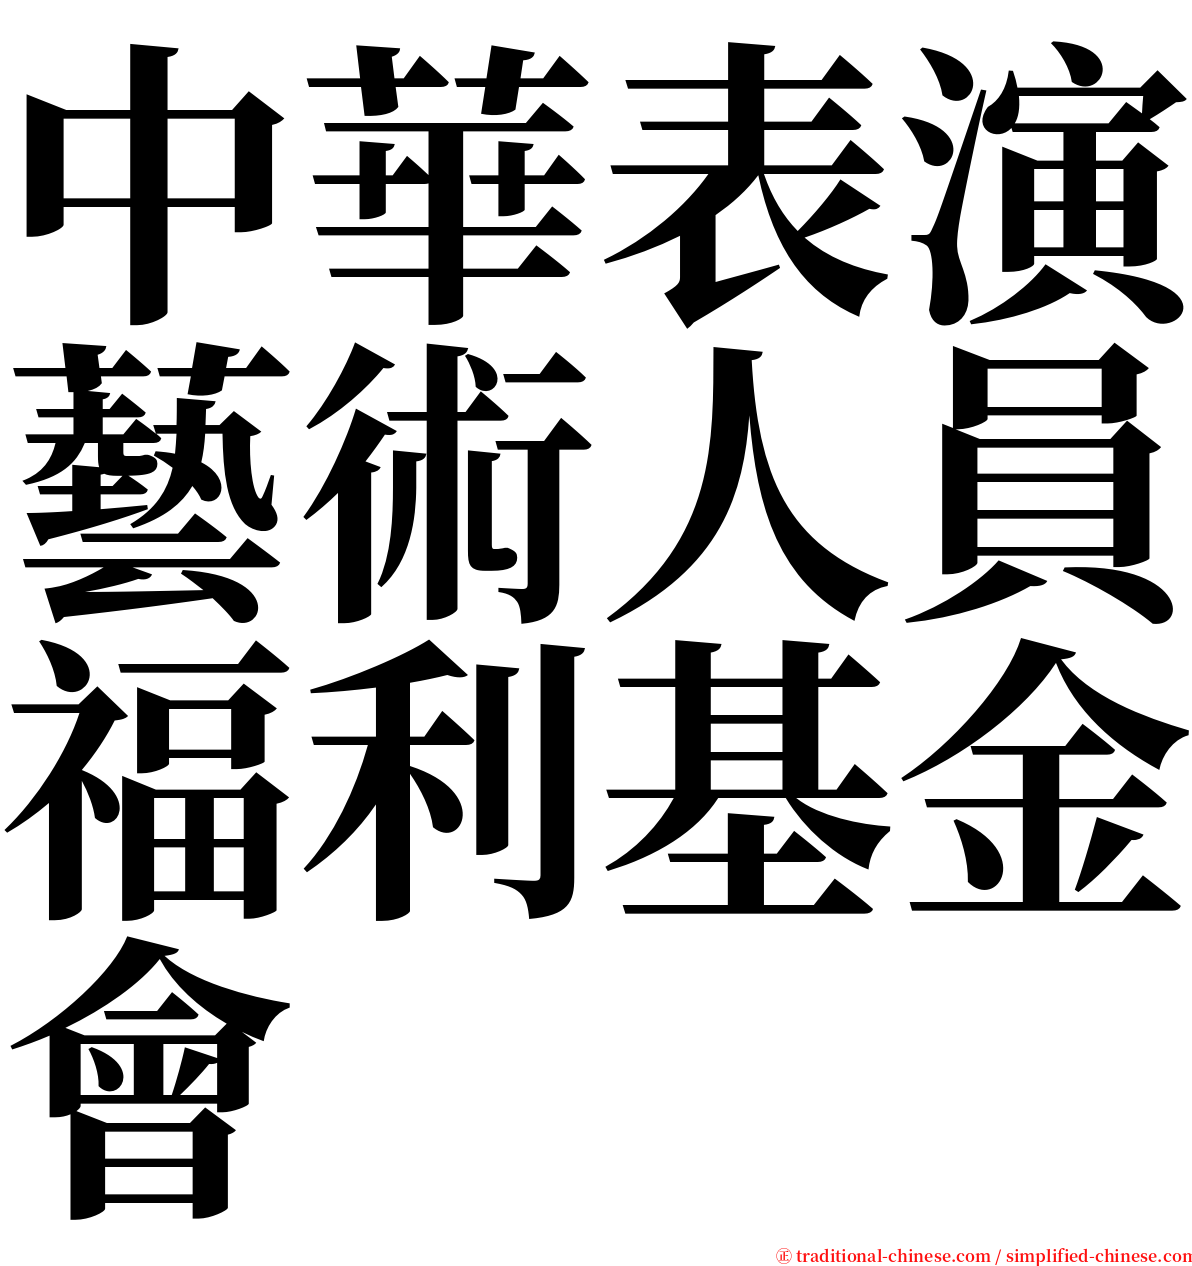 中華表演藝術人員福利基金會 serif font